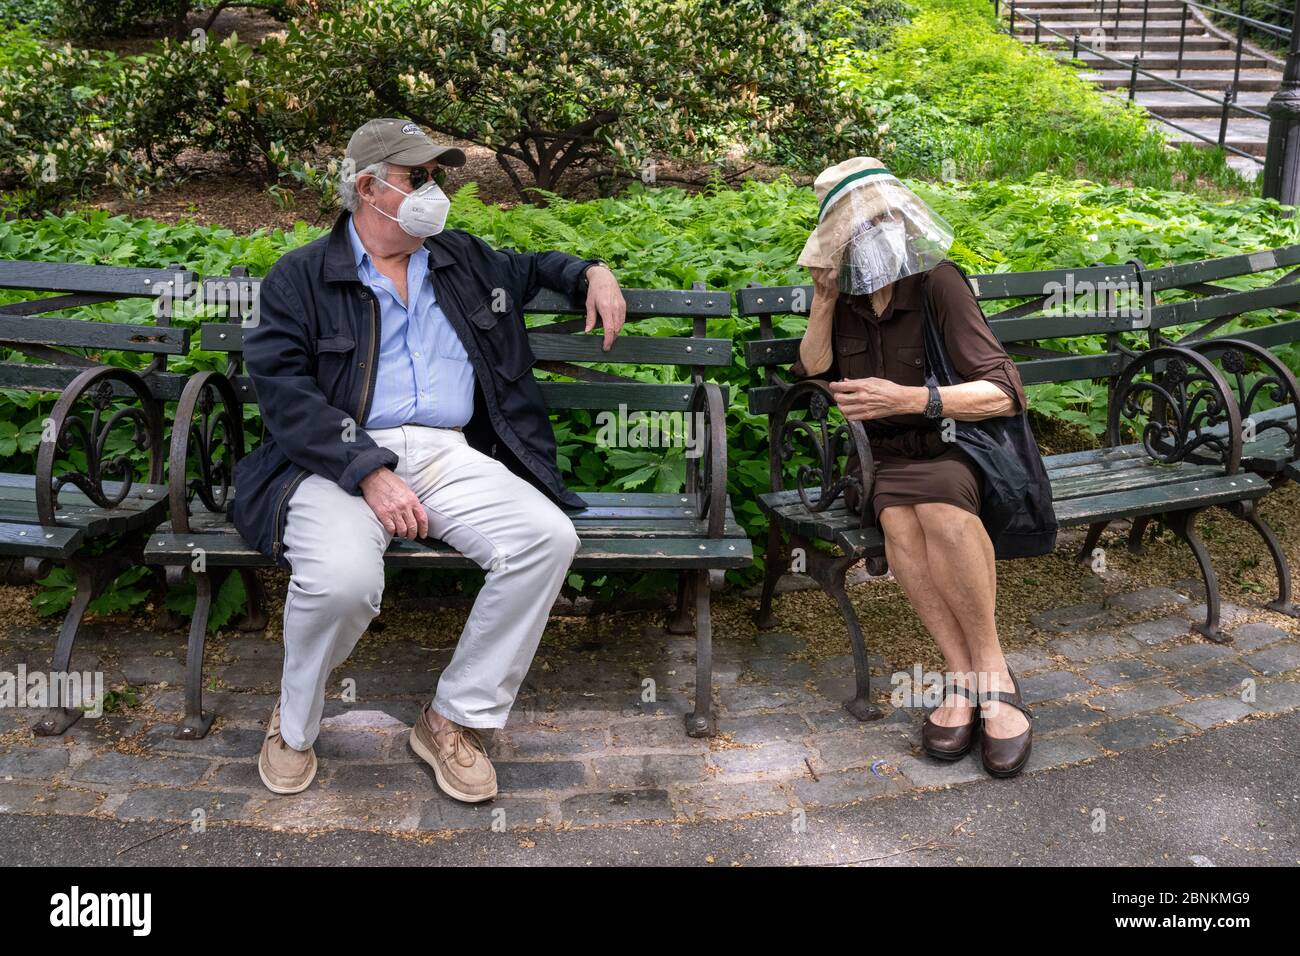 New York, USA. Mai 2020. Ein Paar, das Gesichtsmasken und Schutzvorrichtungen trägt, behält soziale Distanz, während sie während der Coronavirus-Krise im Central Park sitzen. Kredit: Enrique Shore/Alamy Live News Stockfoto